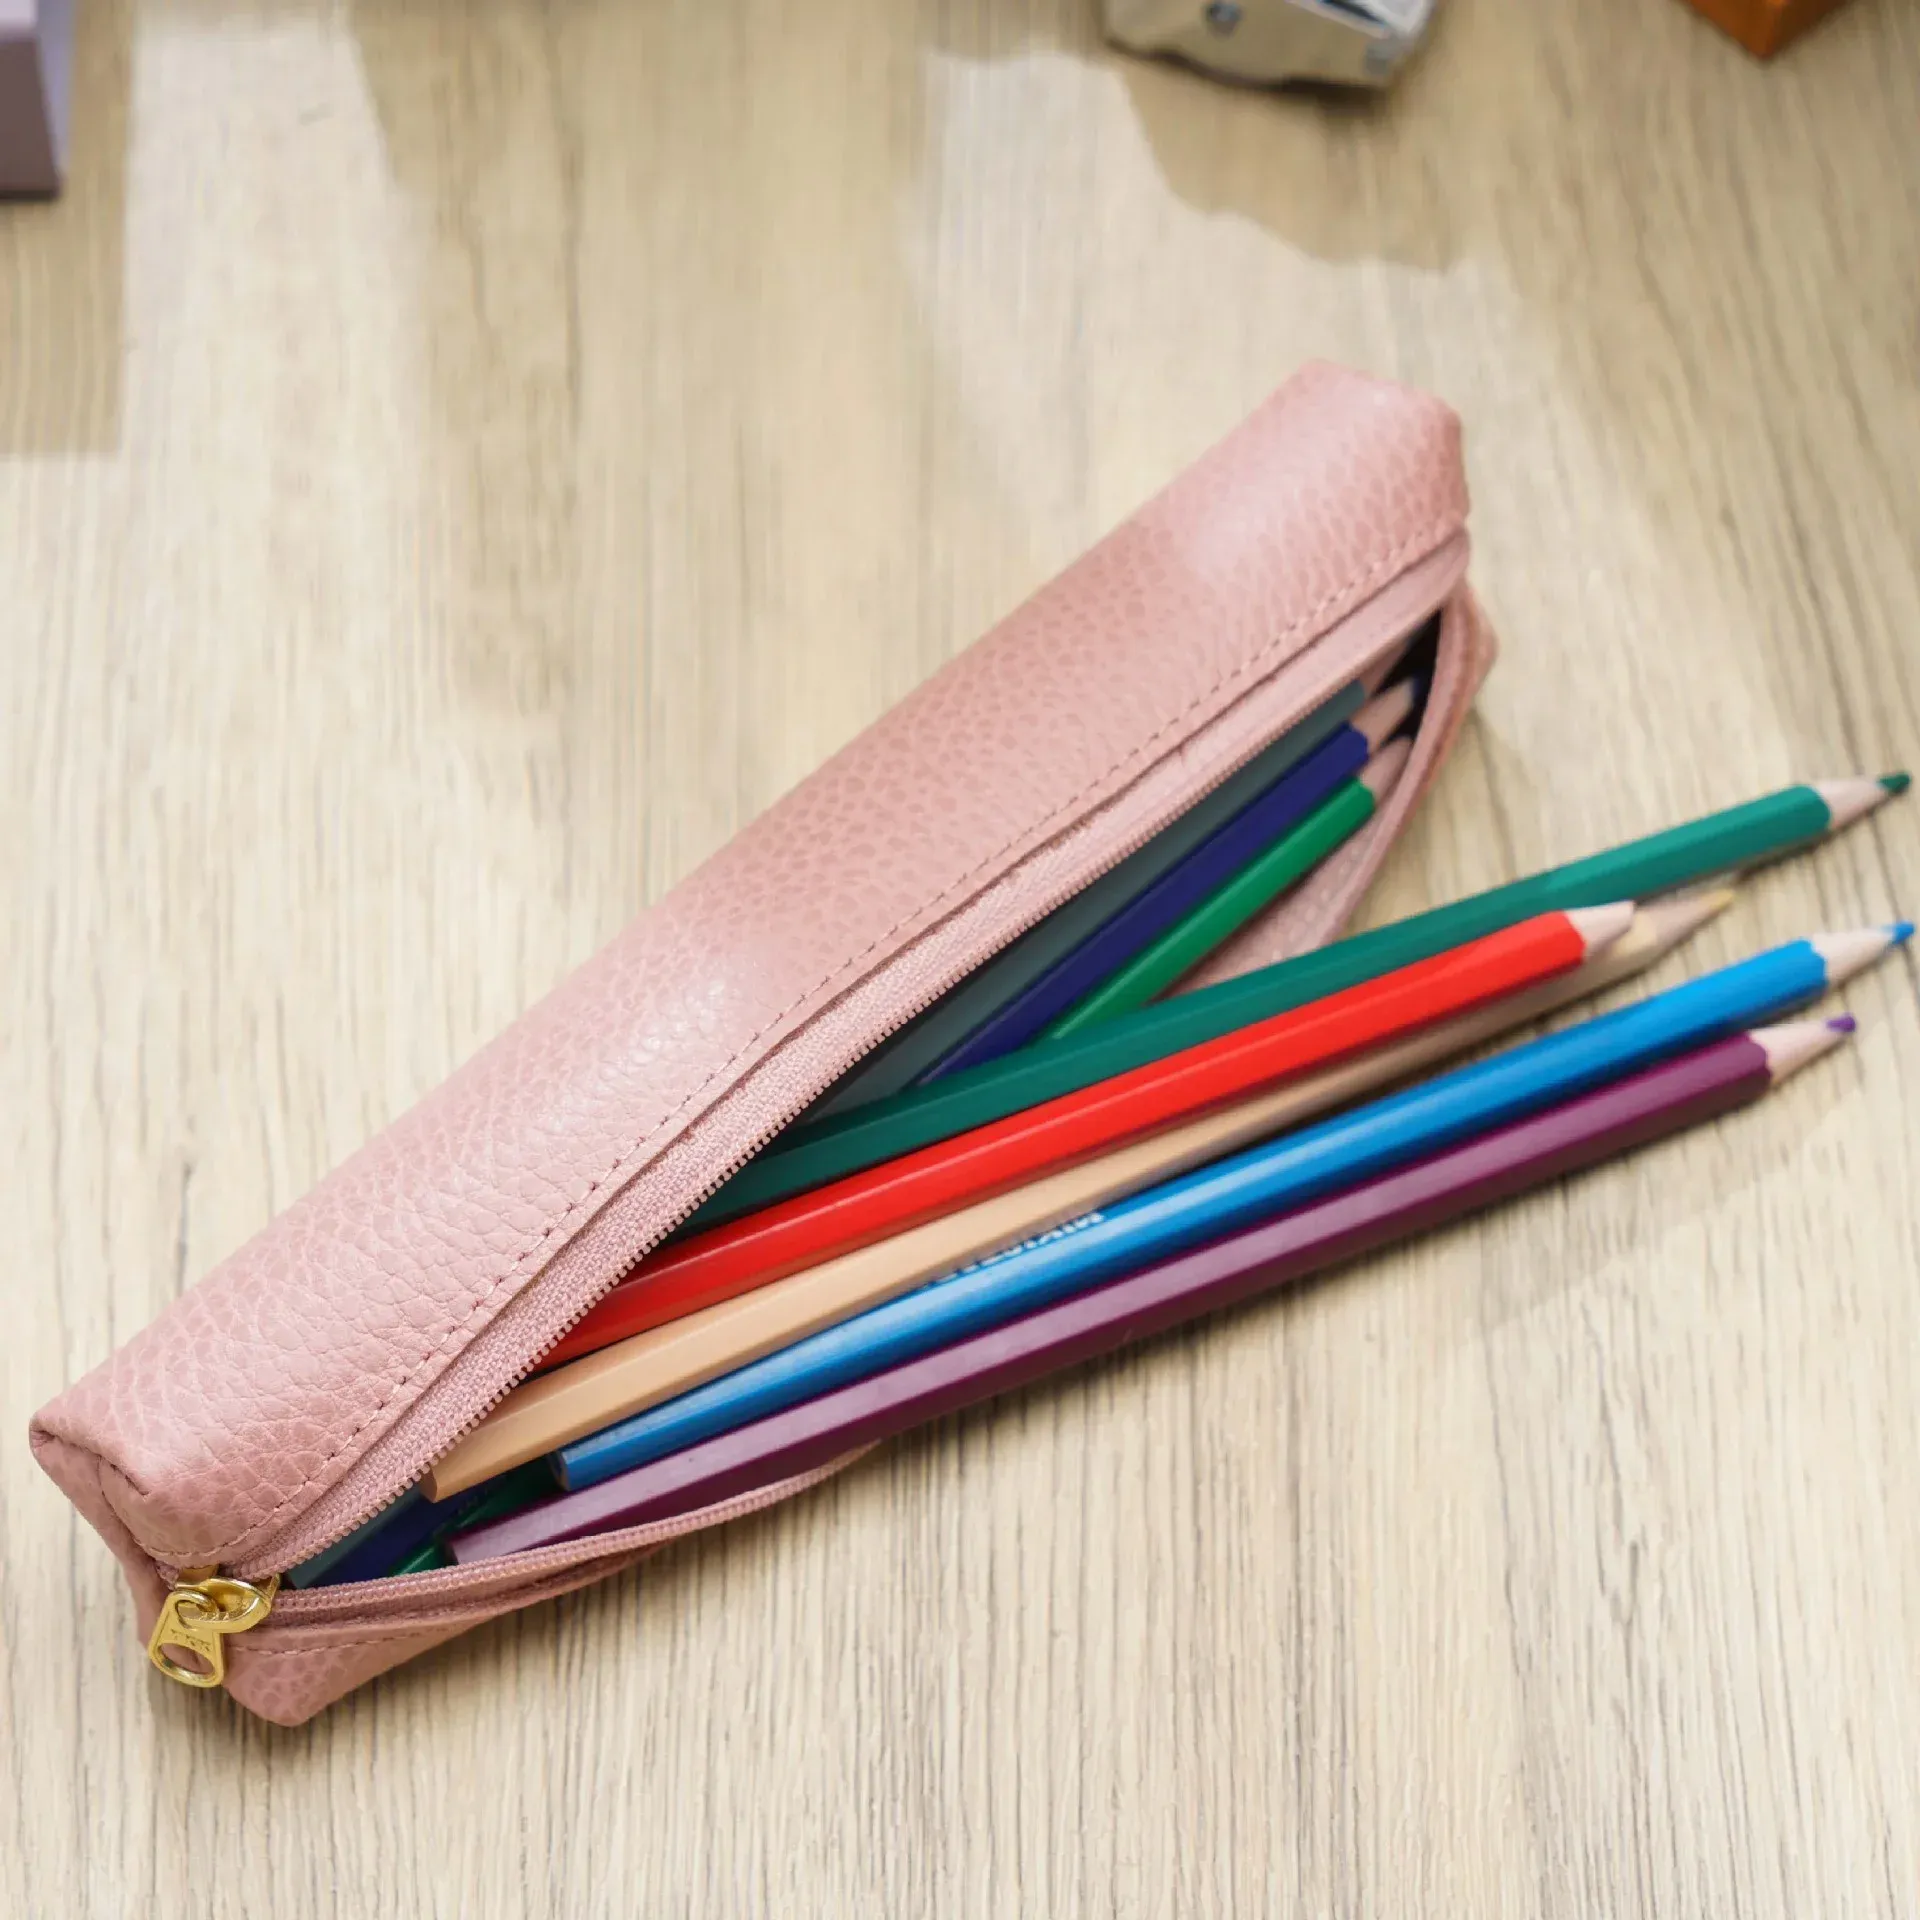 Taschen echte Leder -Mini -Stifthülle für Schüler Schülern Stationerie Story Storbox Stift Tasche Cowide Einfacher Bleistiftstifthalter School Support